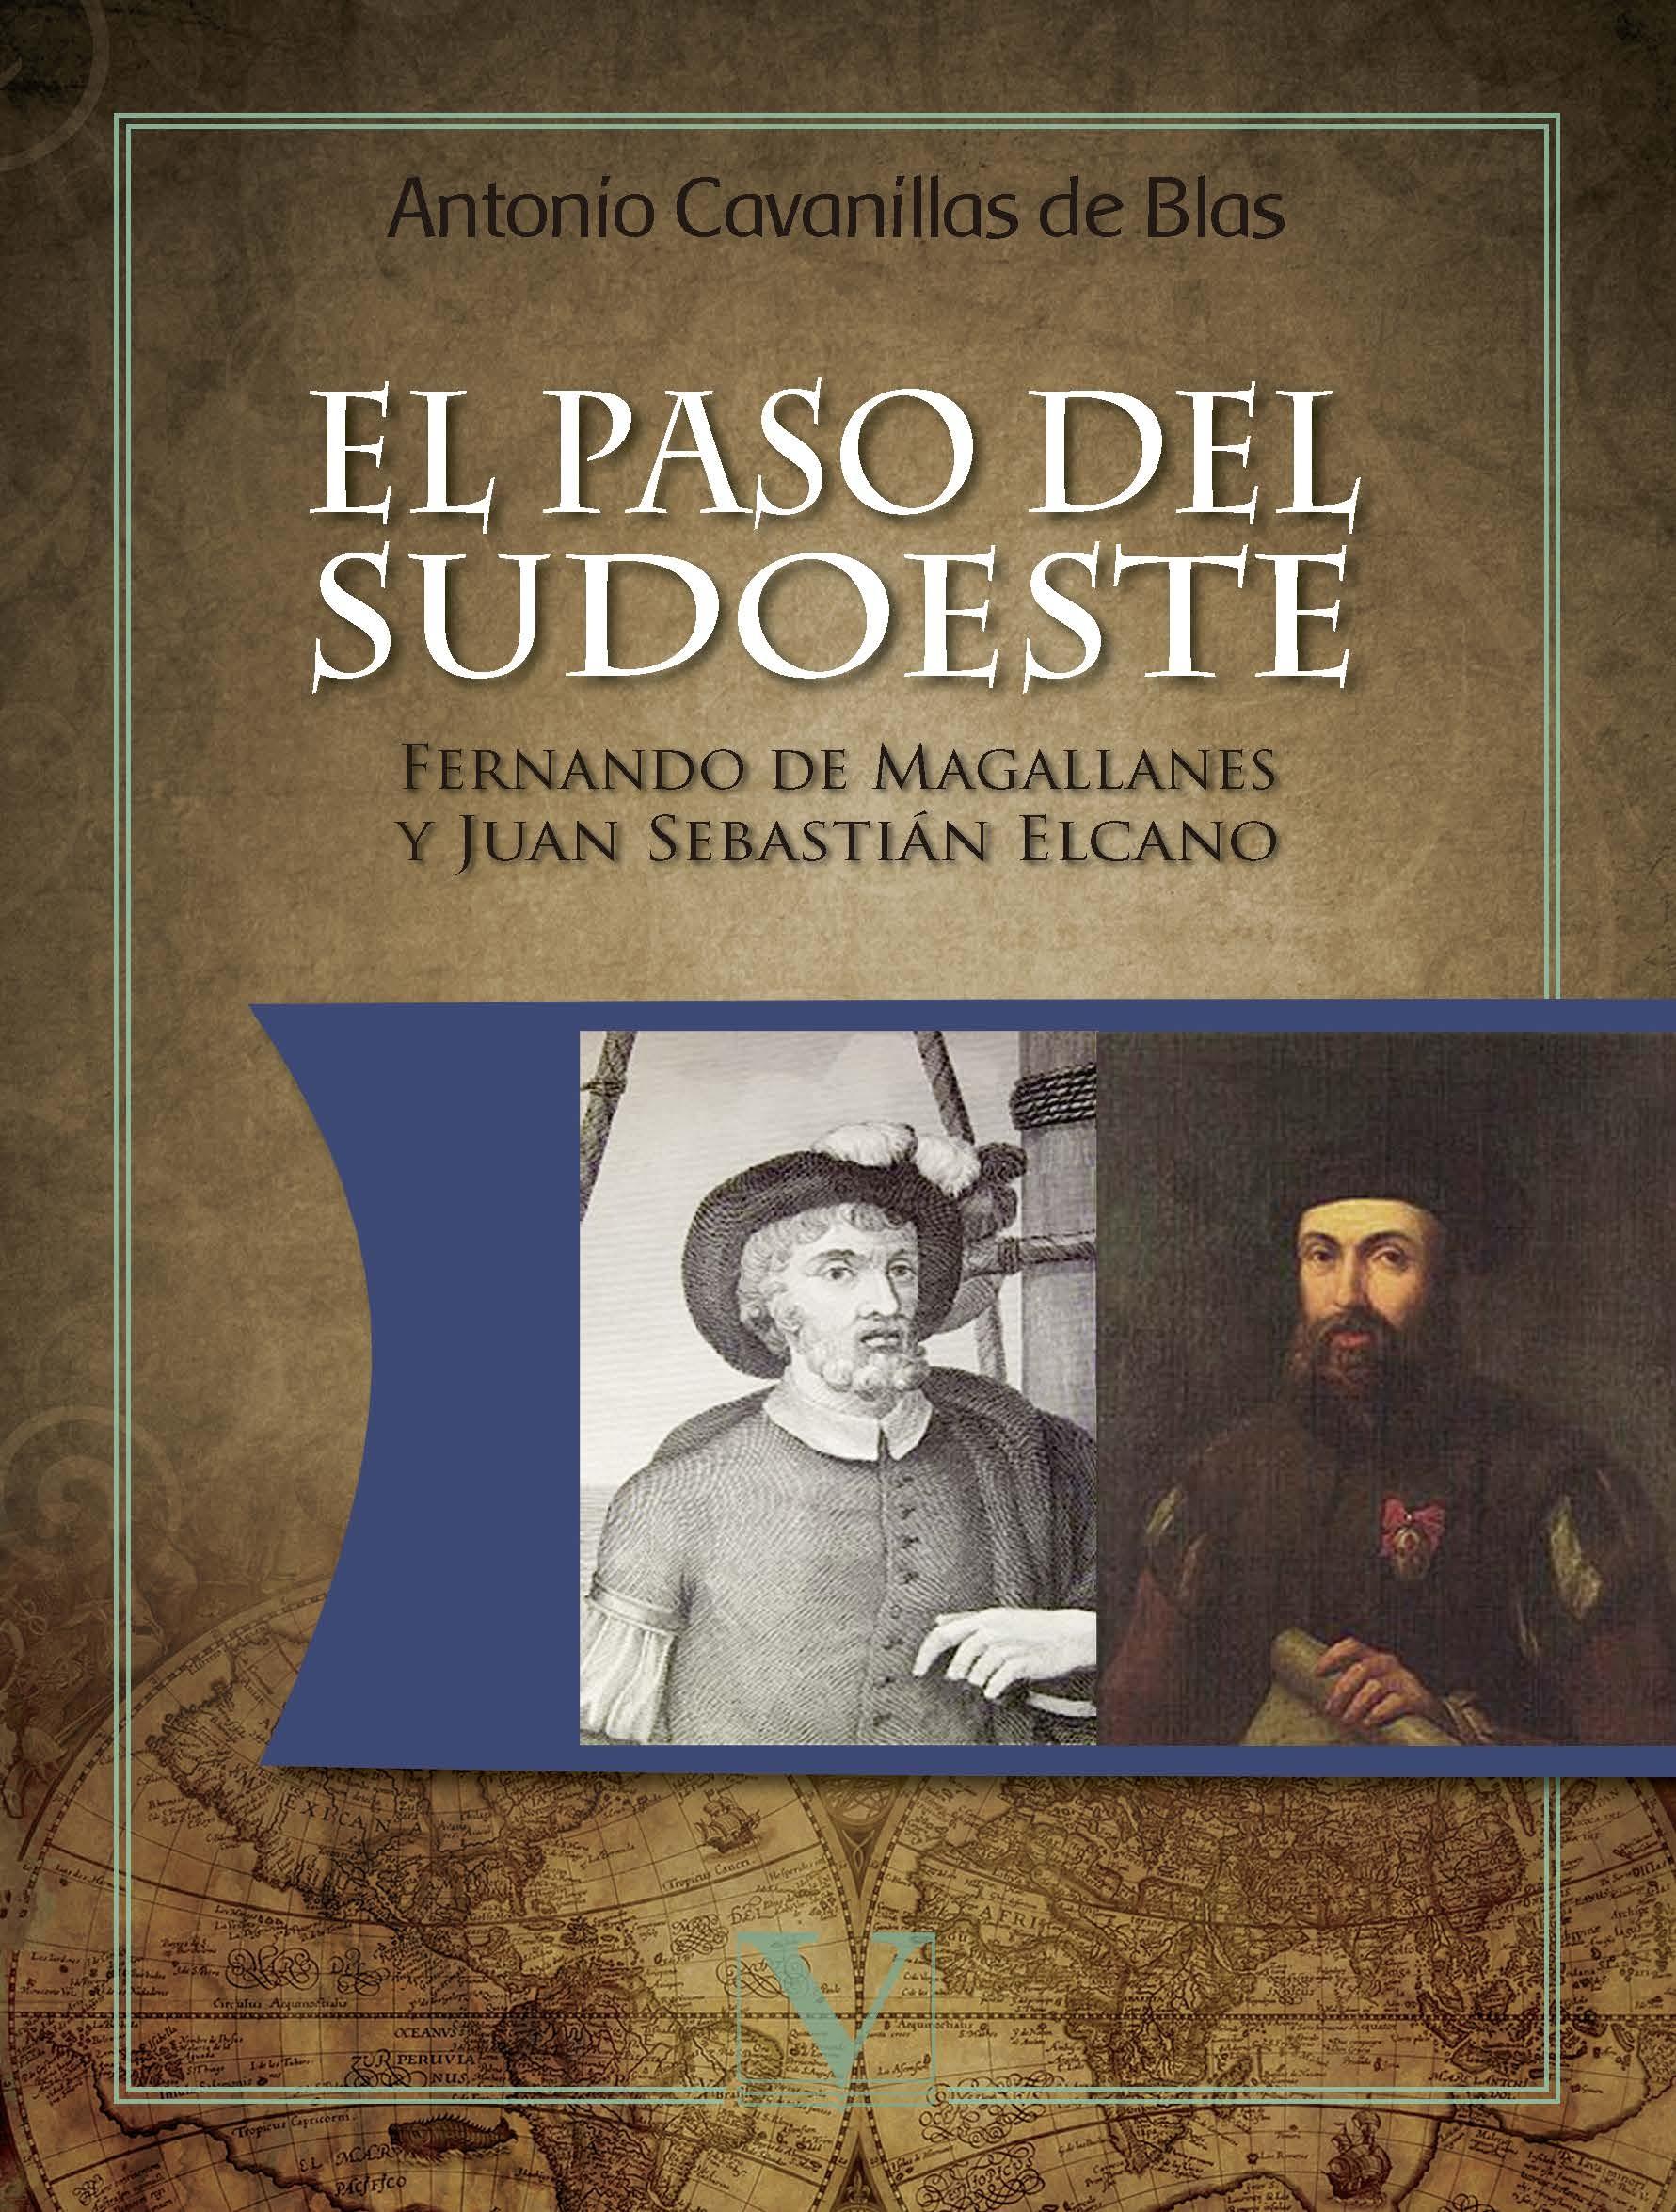 El paso del Sudoeste "Fernando de Magallanes y Juan Sebastián Elcano". 